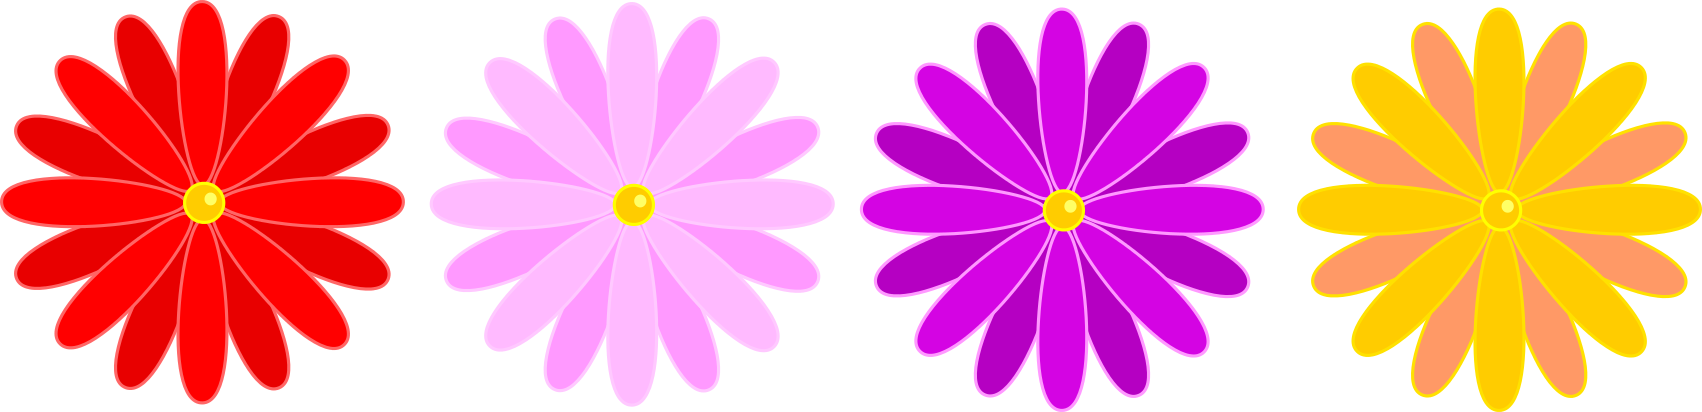 Flower Multi Chain2 Eggs1 - Simple Flower Chain Clip Art (1702x412)